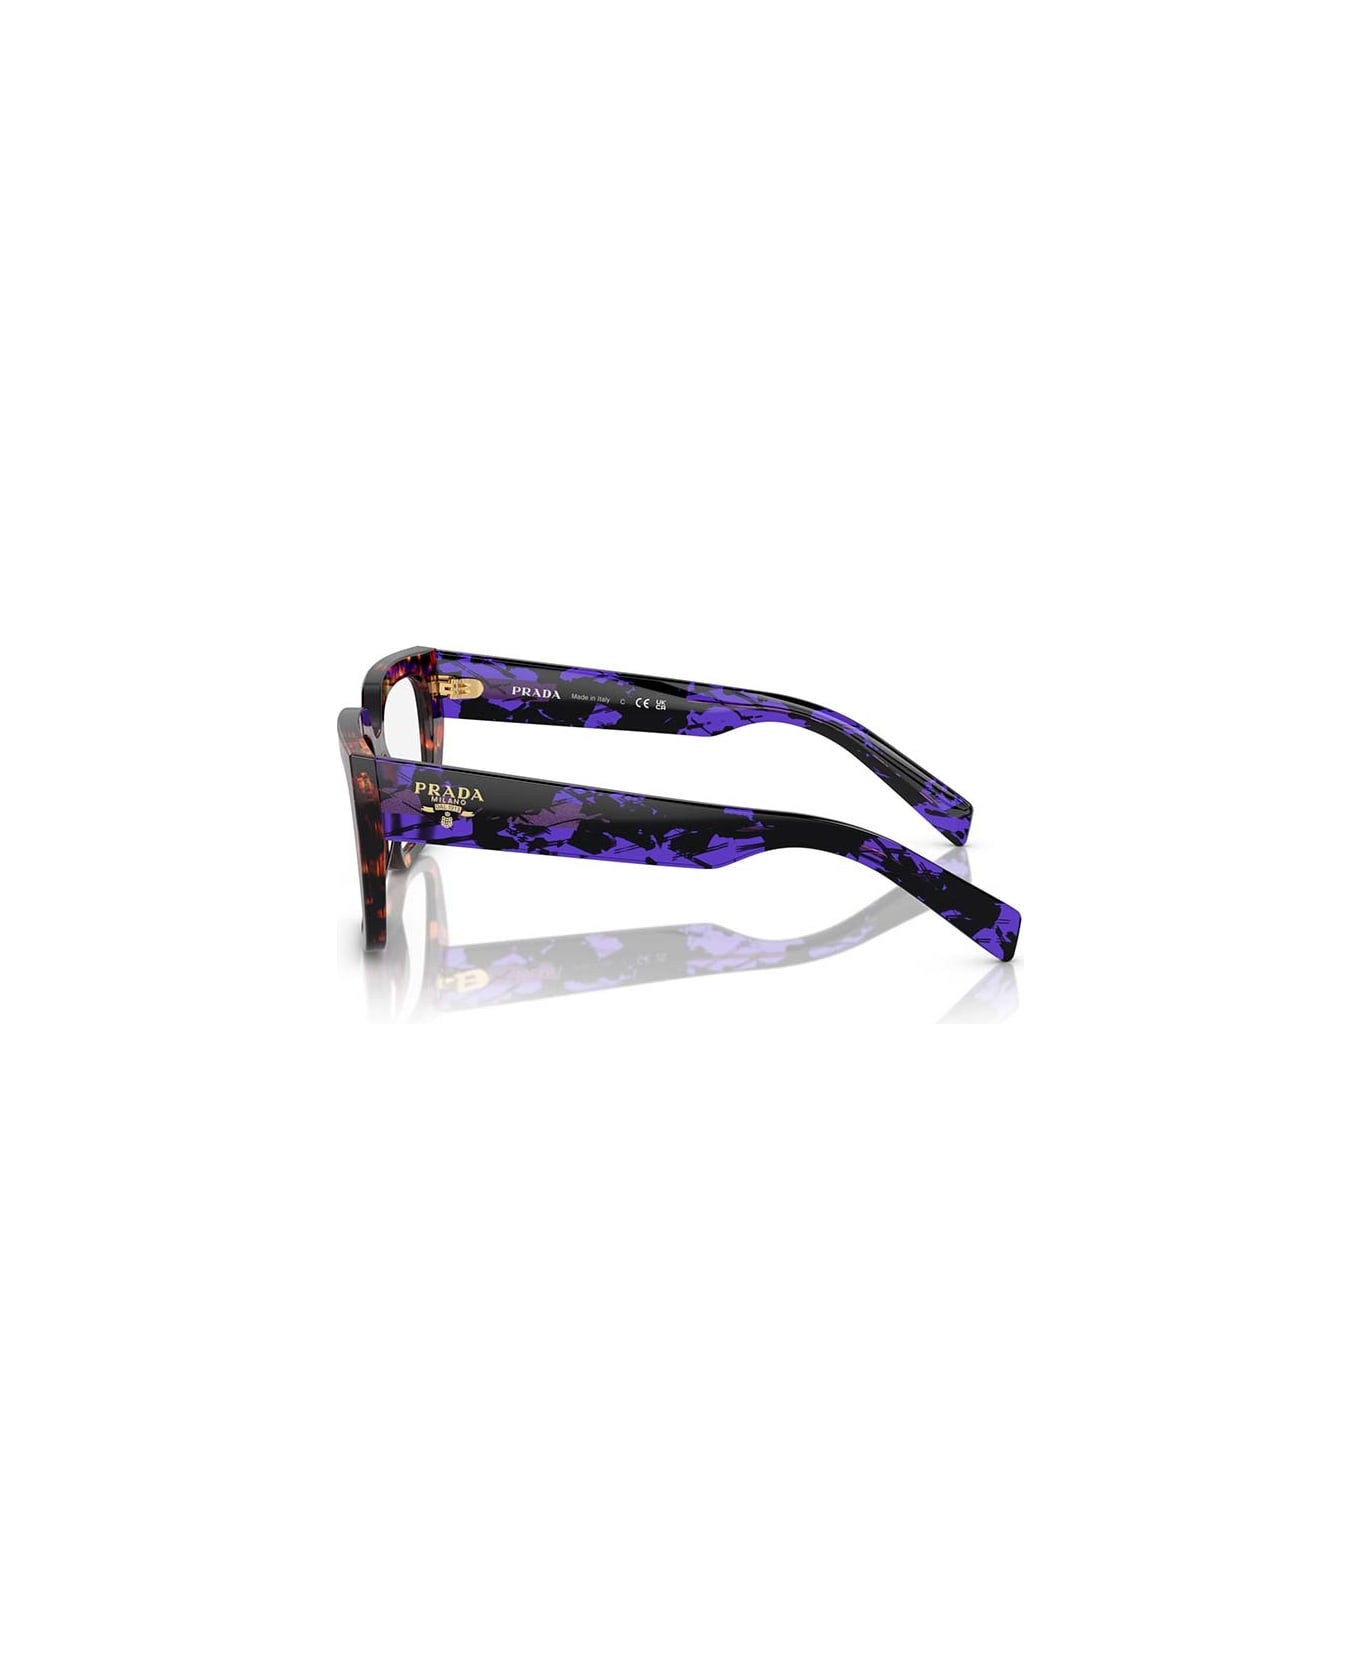 Prada Eyewear Glasses - 14O1O1 アイウェア